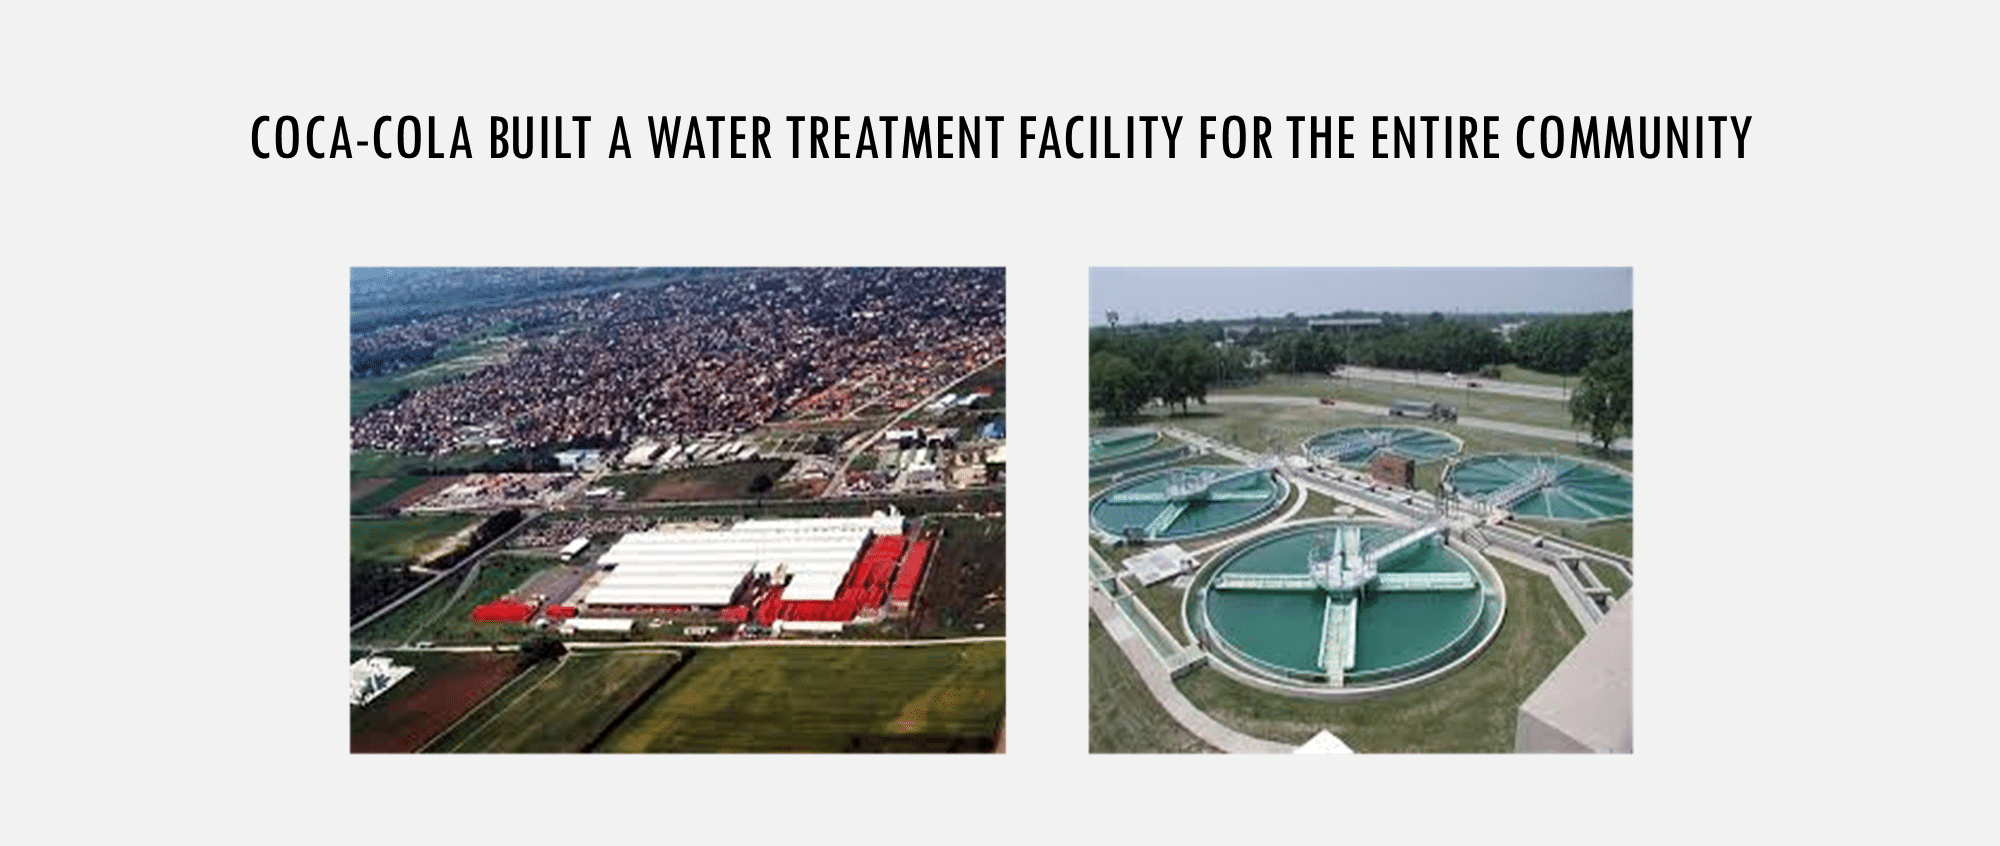 Coca-cola water treatment facility